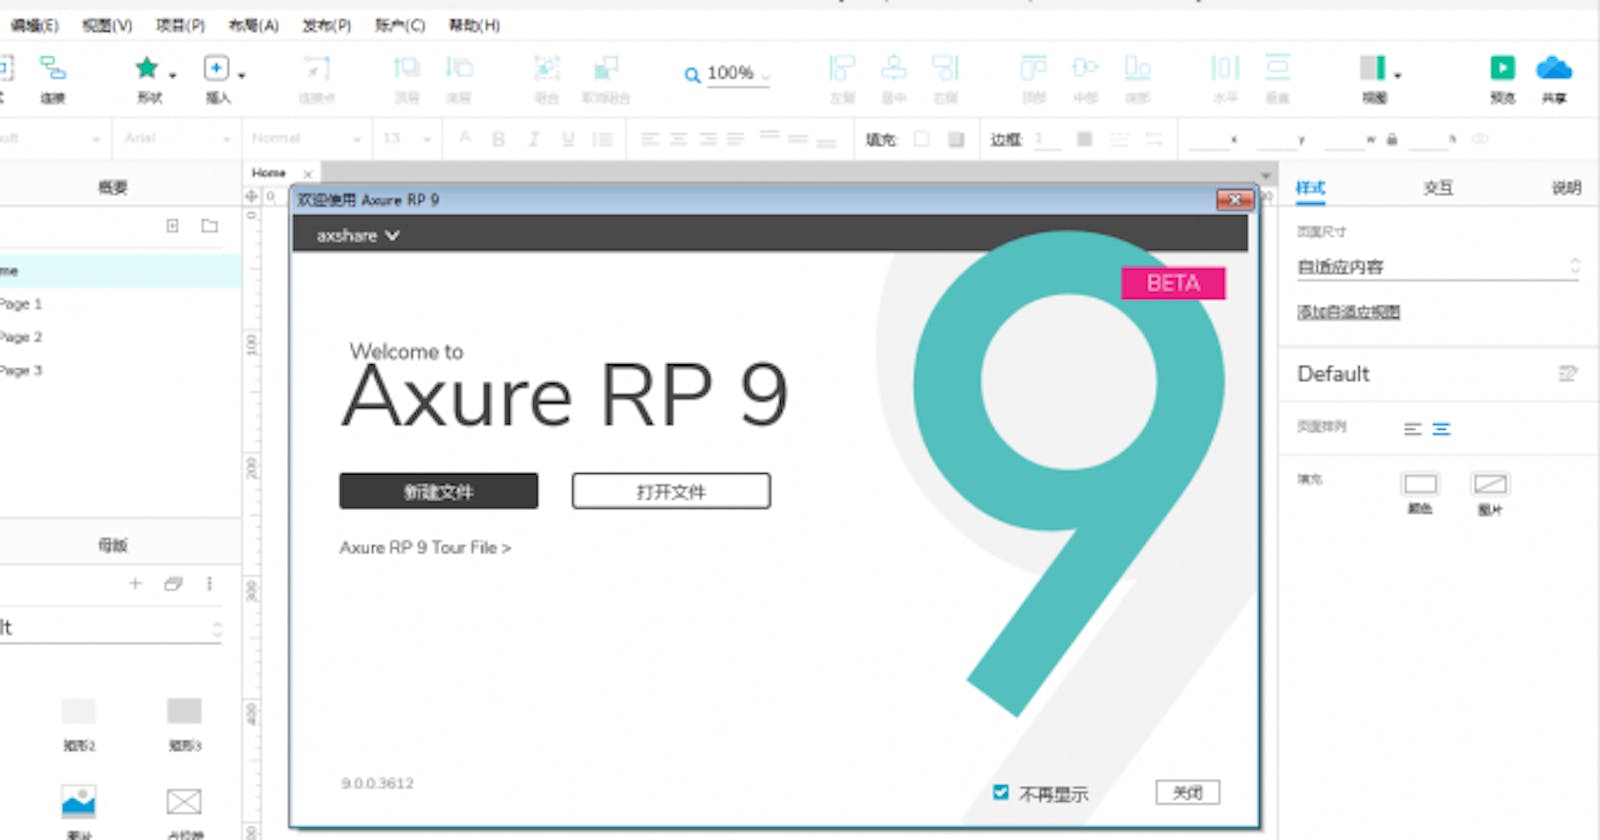 Axure RP 9  的安装包下载和注册码